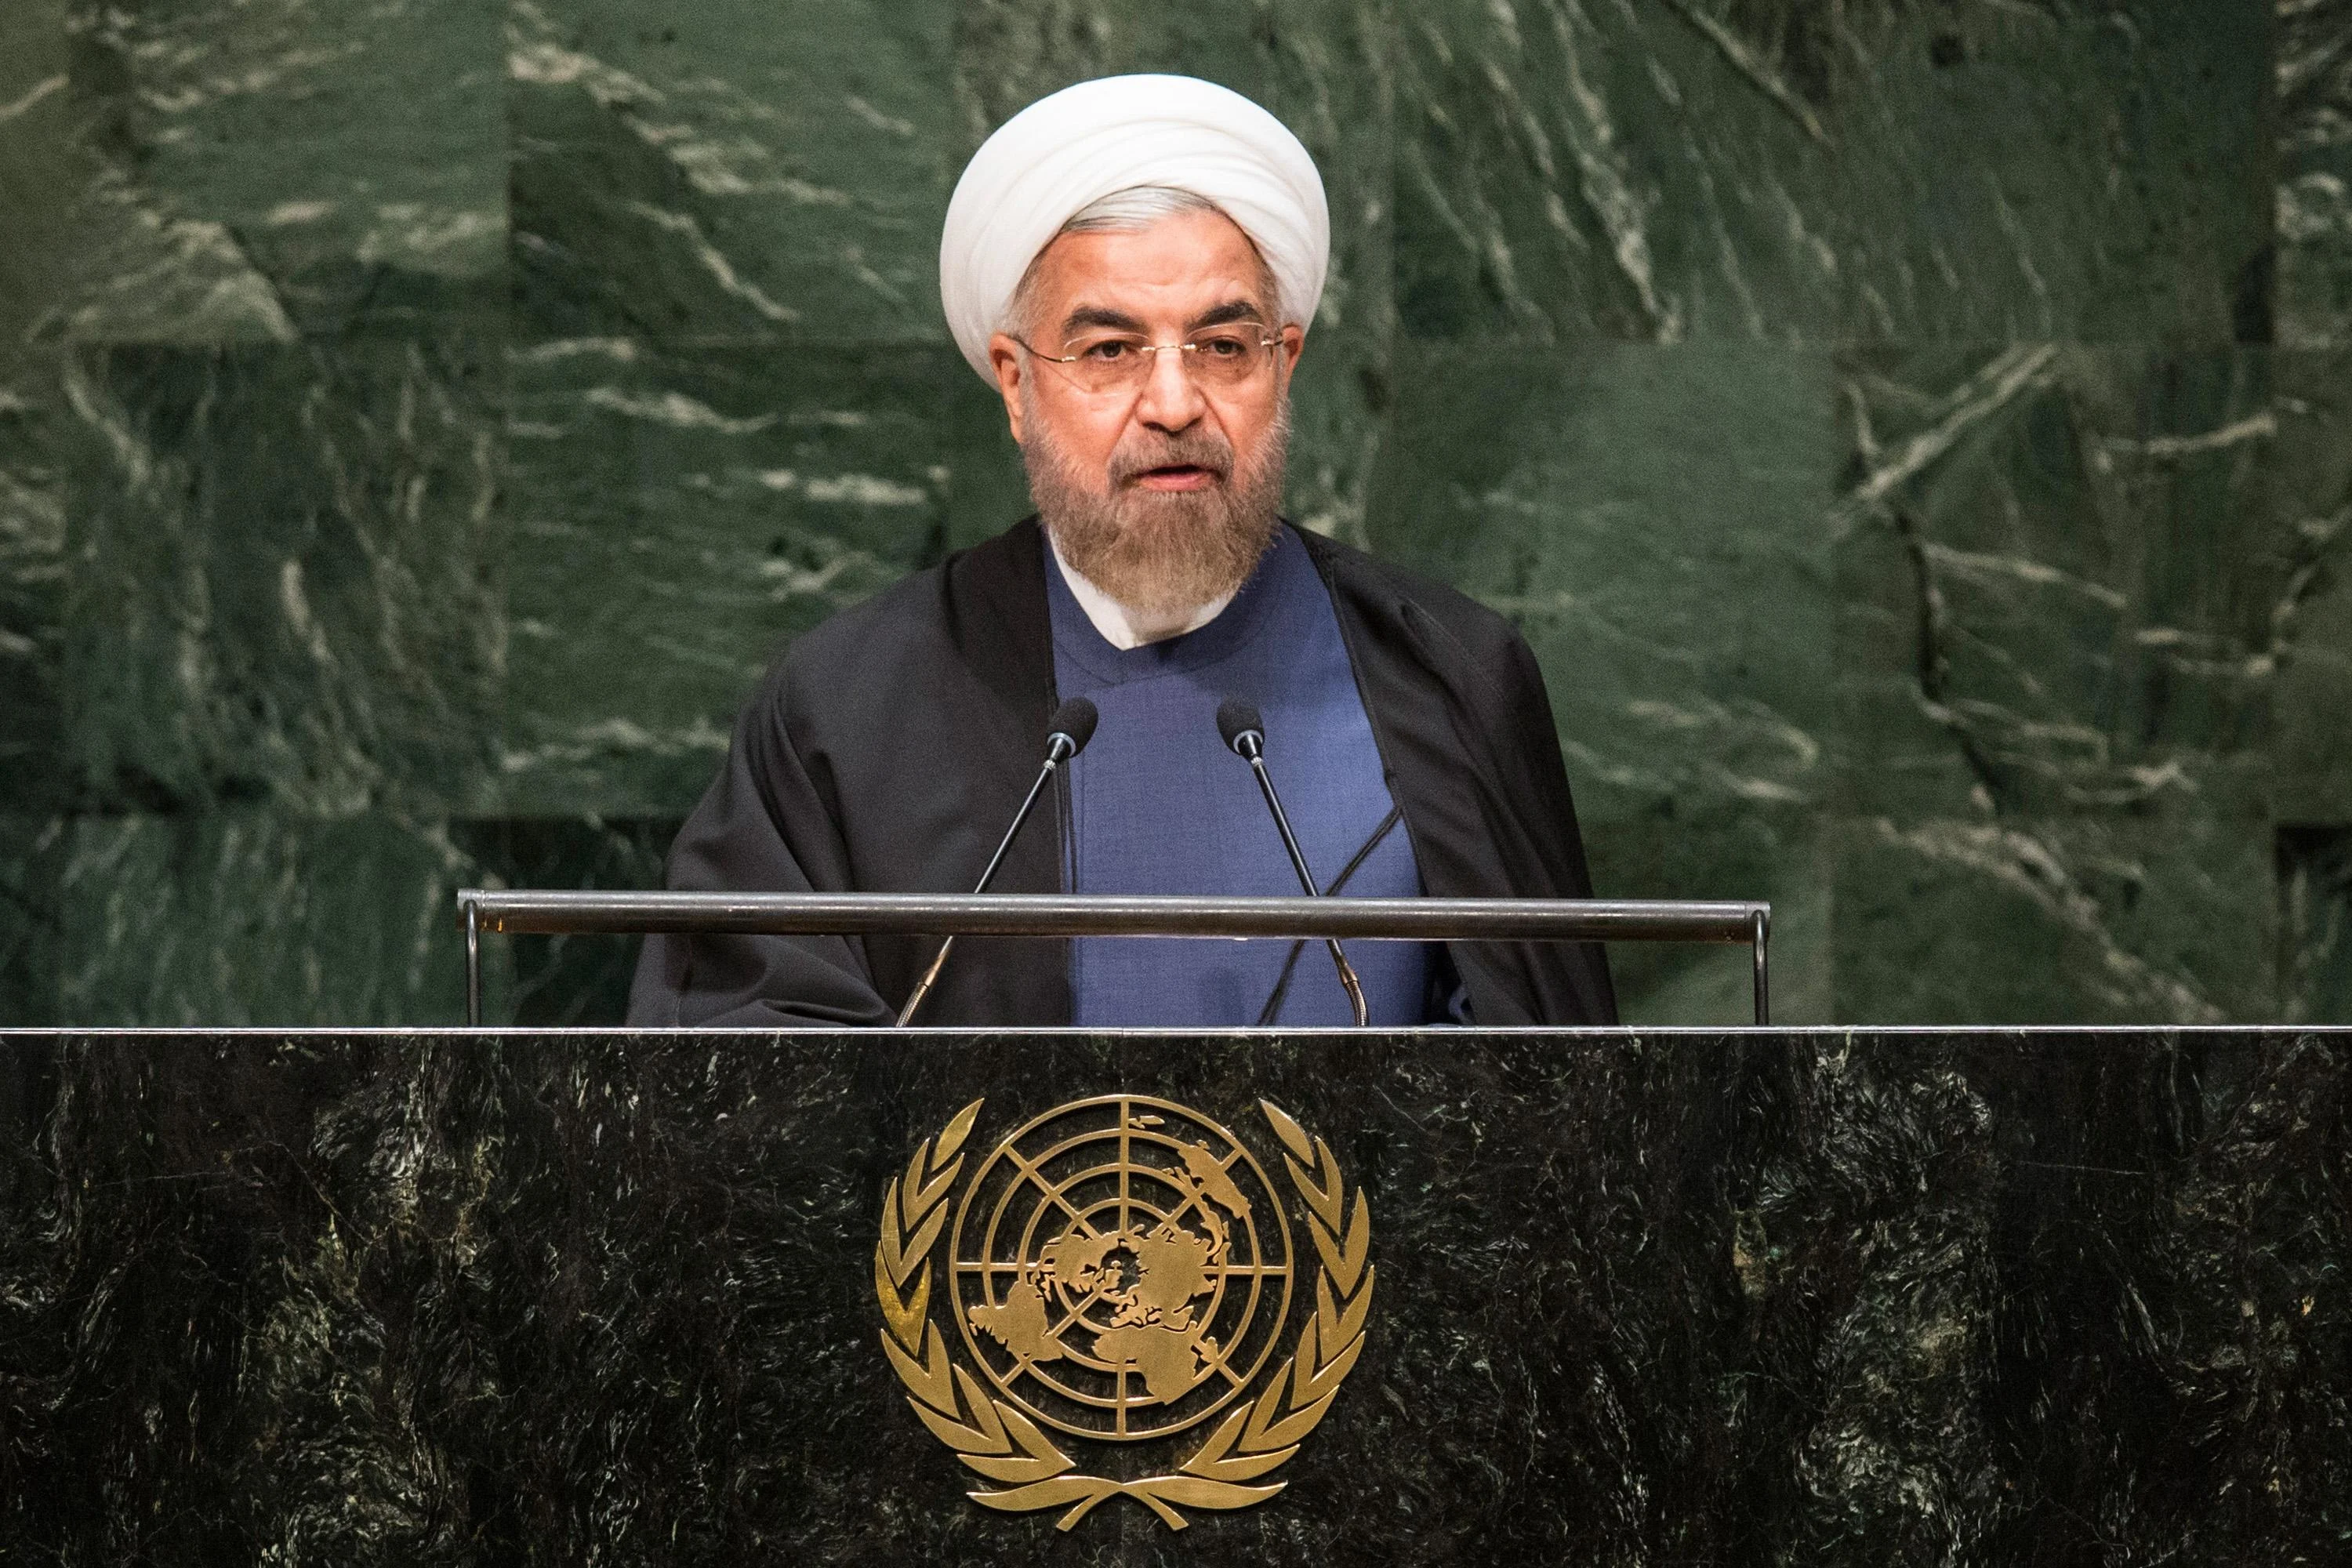 נשיא איראן, חסן רוחאני: "הסכם הגרעין - סמל לניצחון"